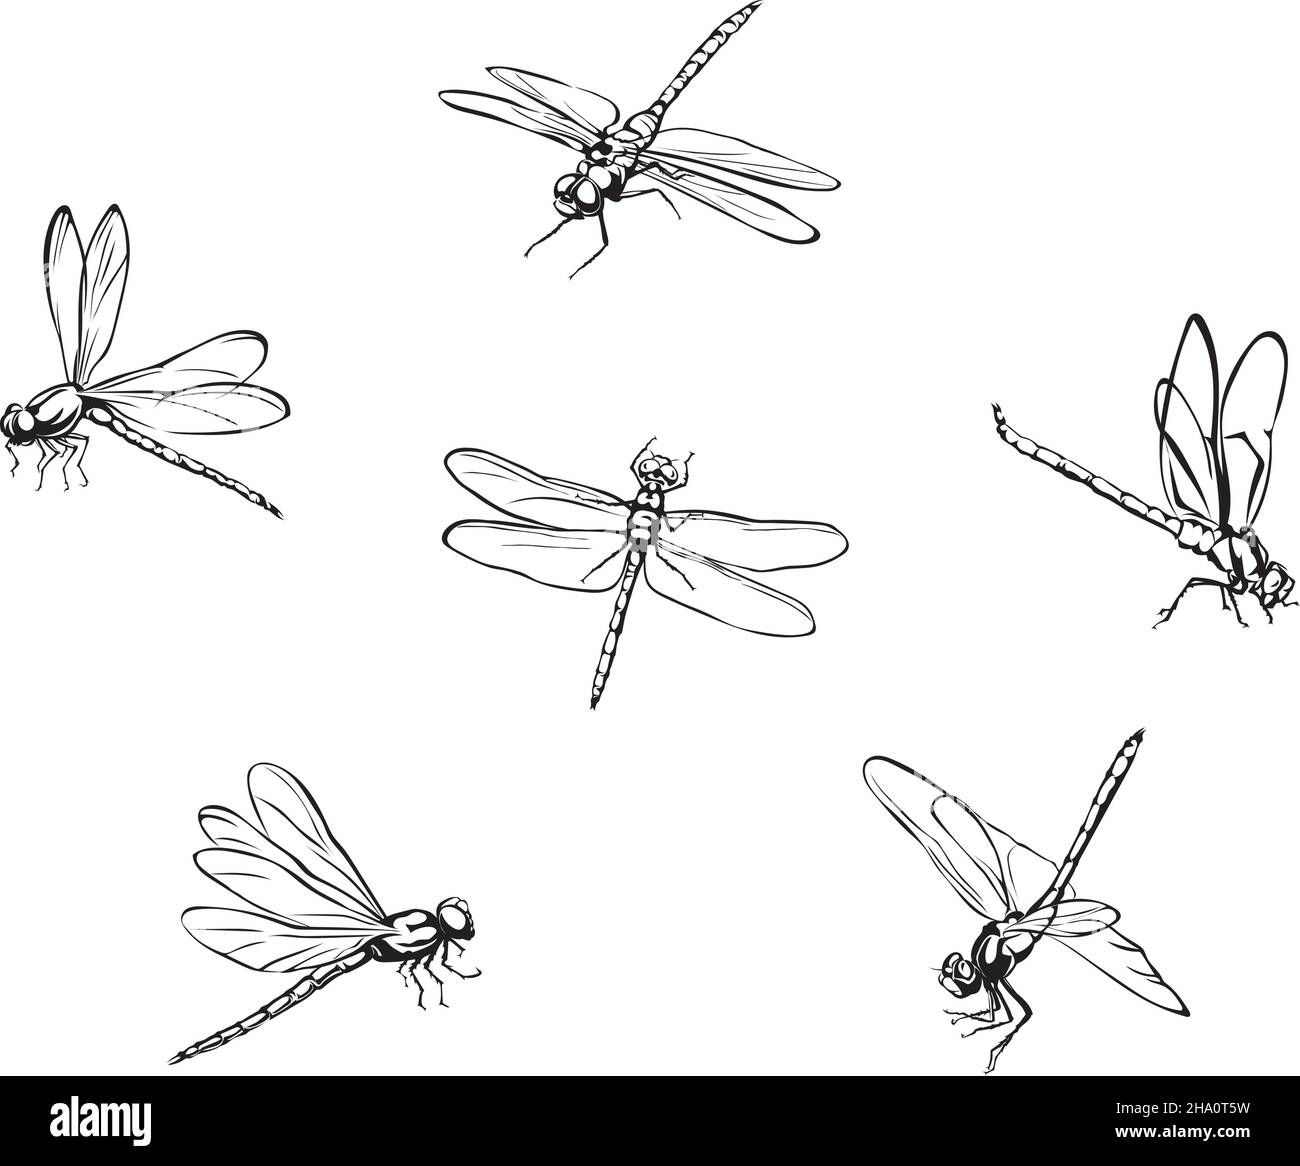 Libelle, Vektorbild von Libellen, fliegenden Libellen, Vektorgrafik für die Verwendung in Logos, Zeichen, Marken, für Design und Werbung, Farbe Stock Vektor